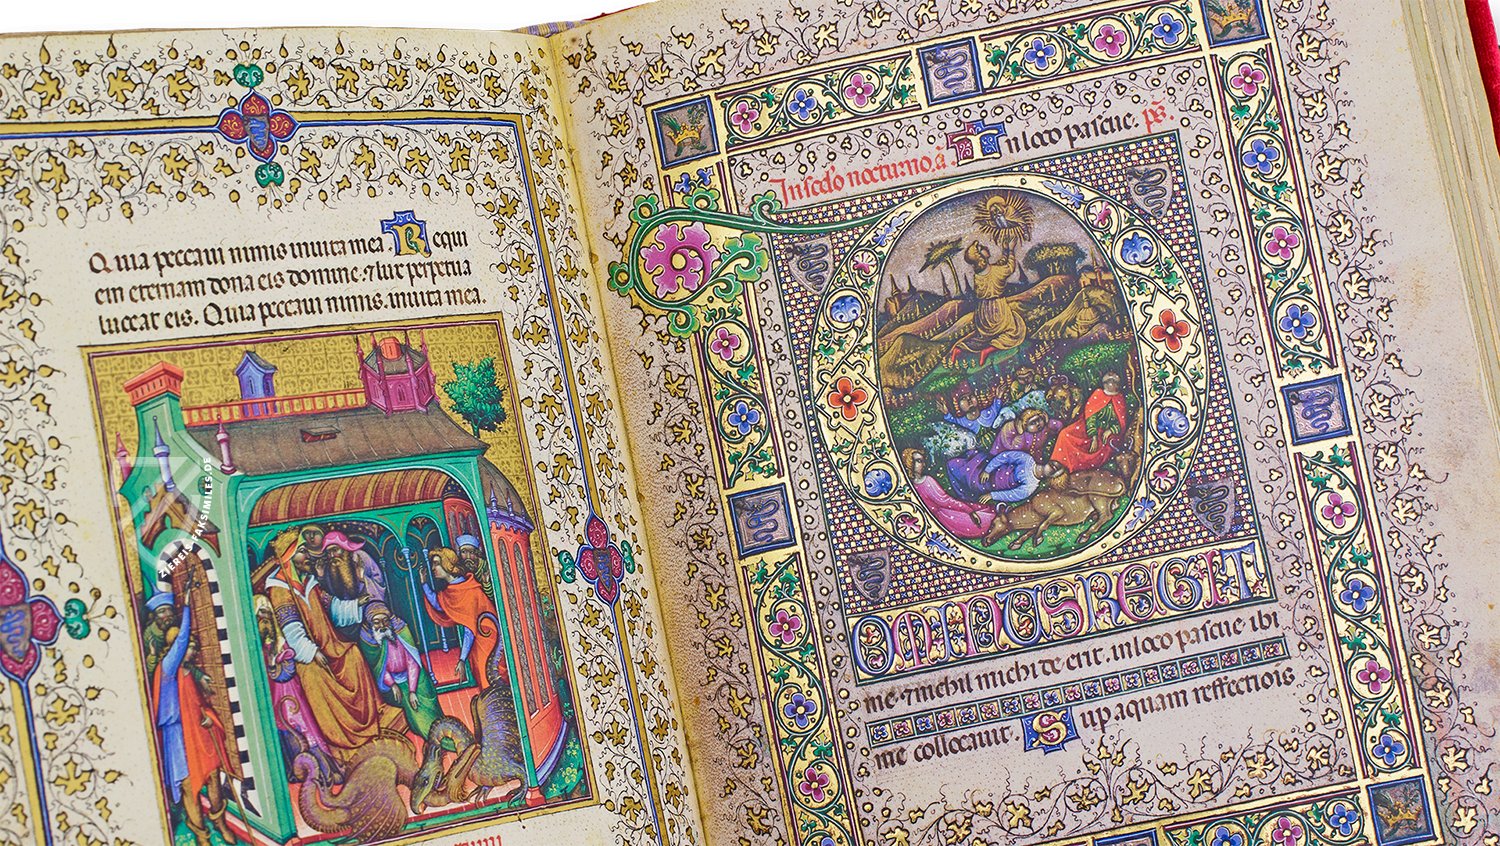 Ein Zeugnis des Reichtums des Herzogtums Mailand (Stundenbuch der Visconti, Wohl Mailand (Italien) — Um 1390, vollendet nach 1428)